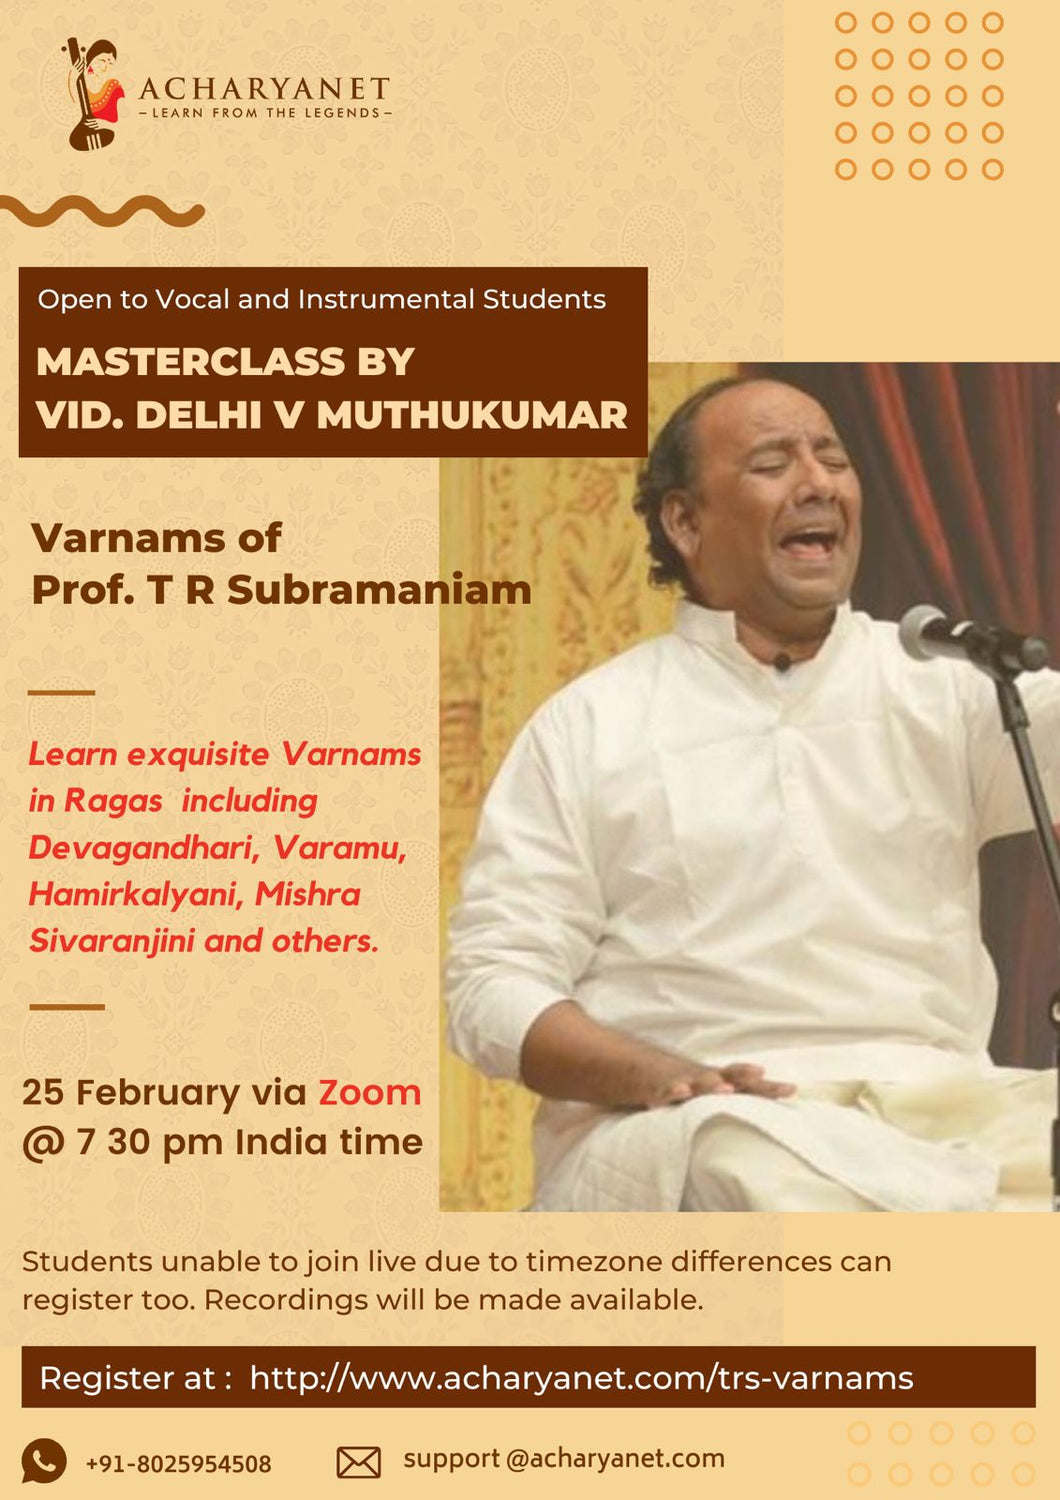 Masterclass on Varnams of Prof. T R Subramaniam by Vid. Delhi V  Muthukumar